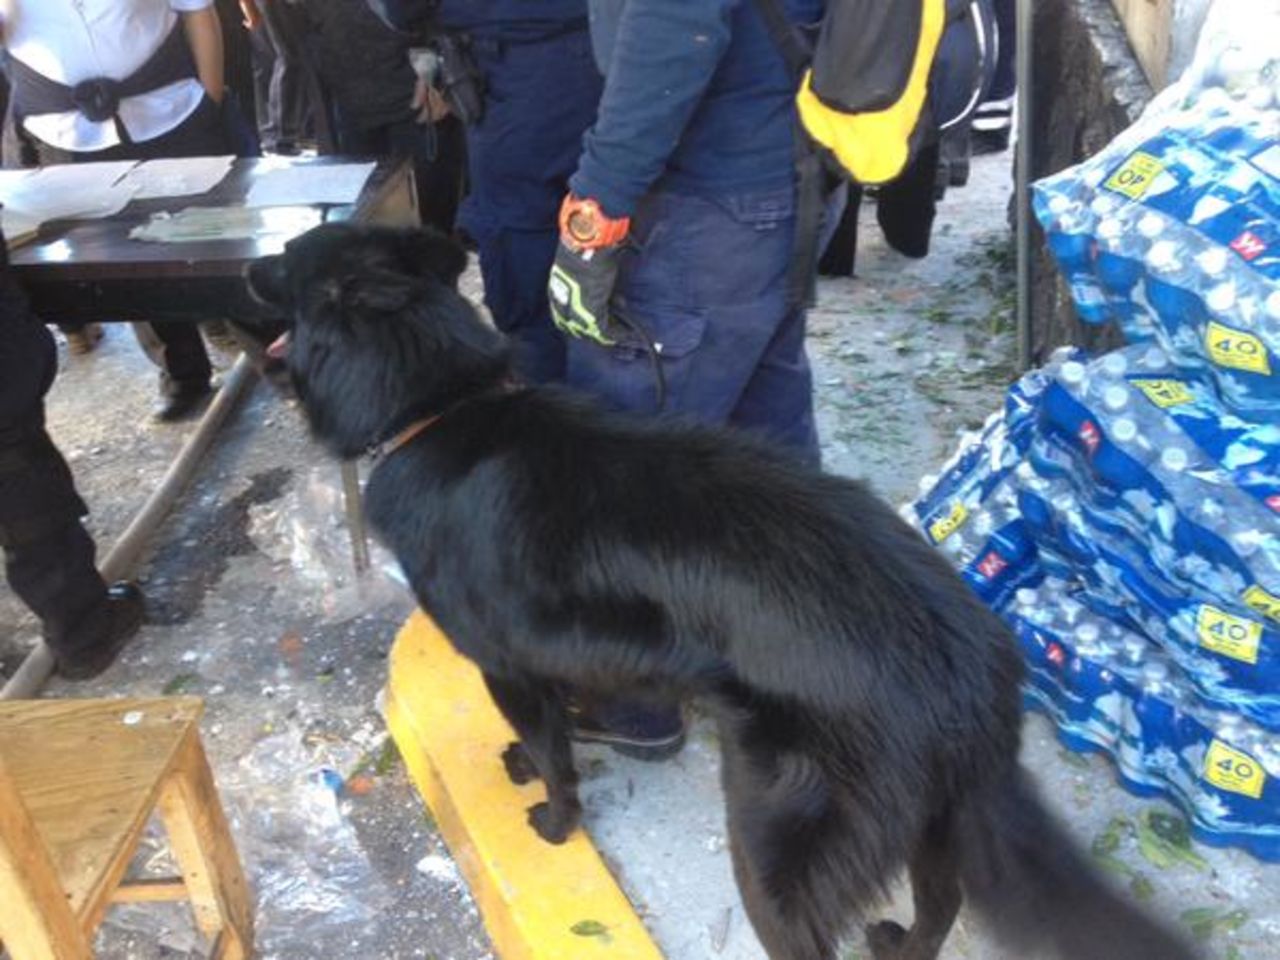 Rescatistas con perros adiestrados se hicieron presentes en el lugar para brindar socorro.